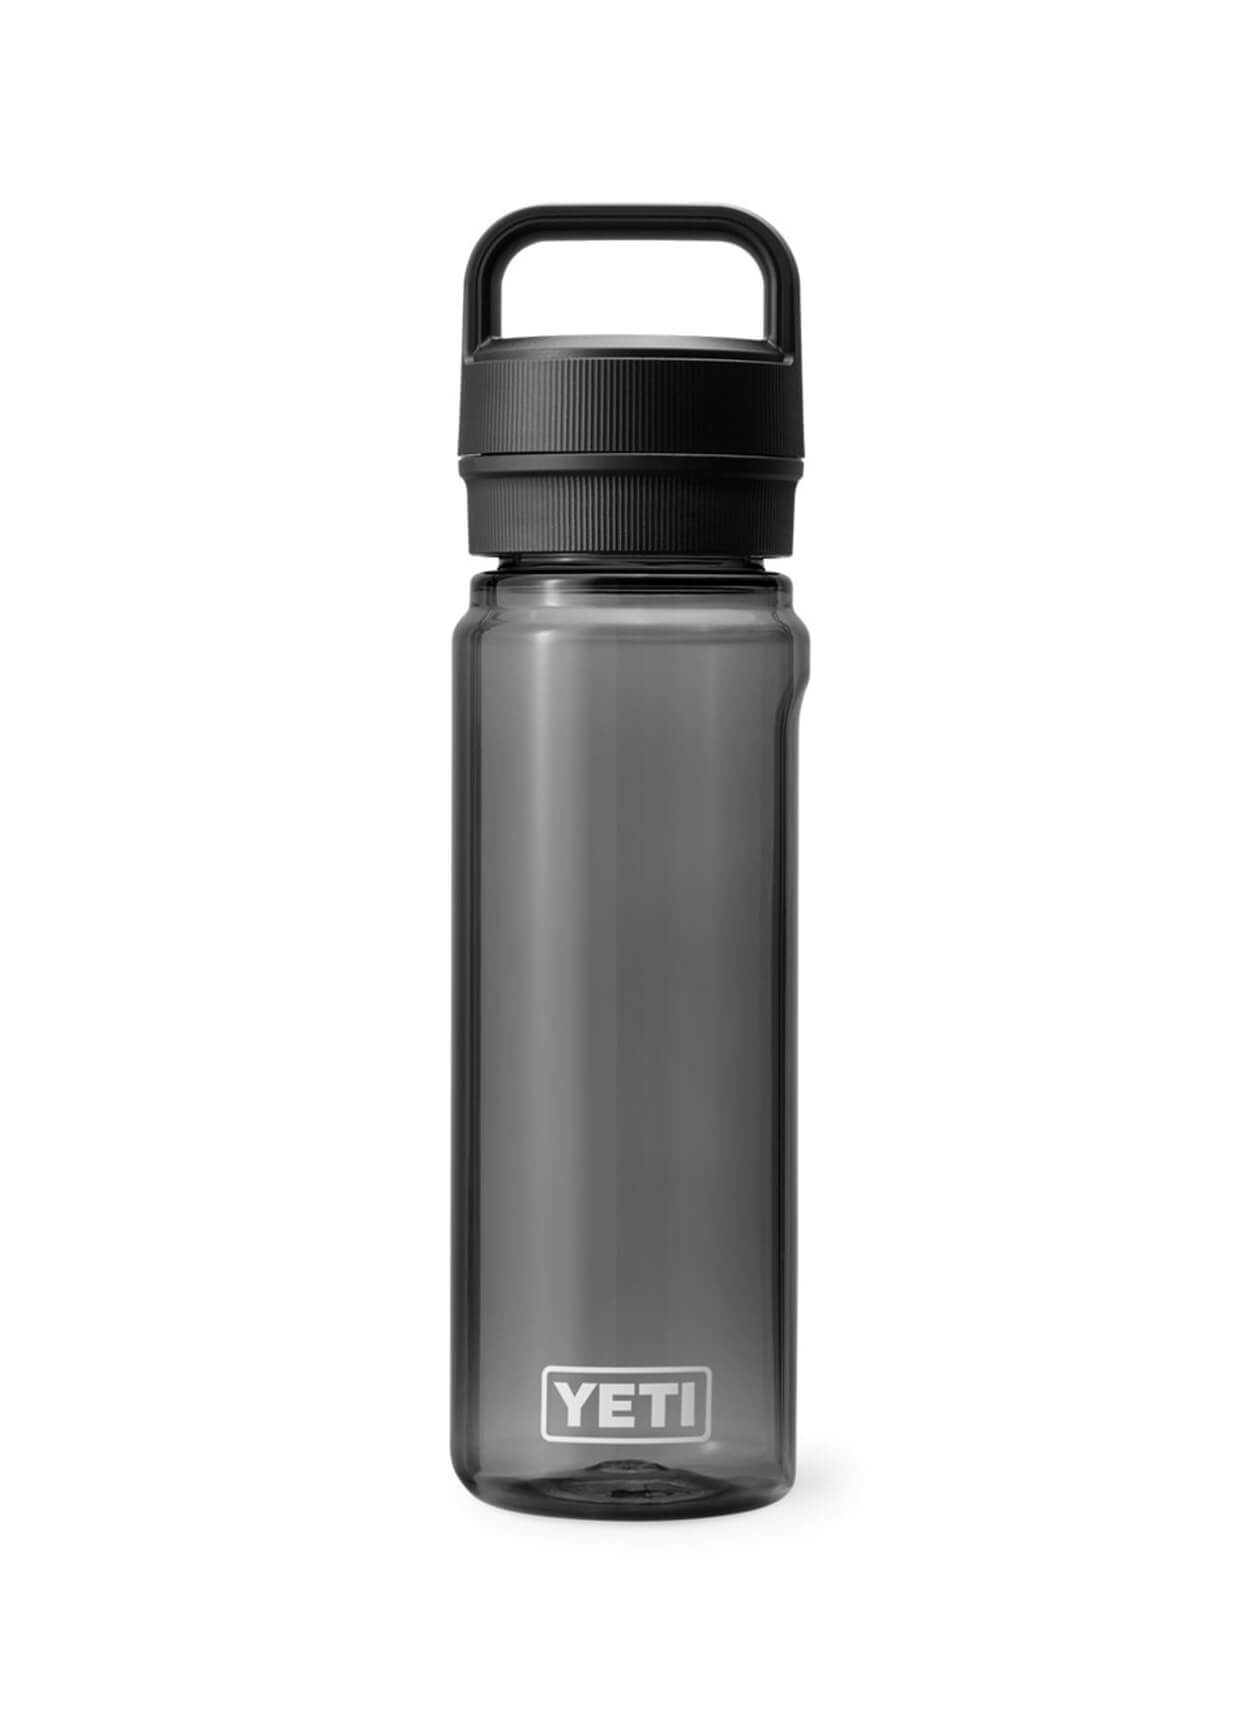 Charcoal YETI Yonder 25 oz Water Bottle